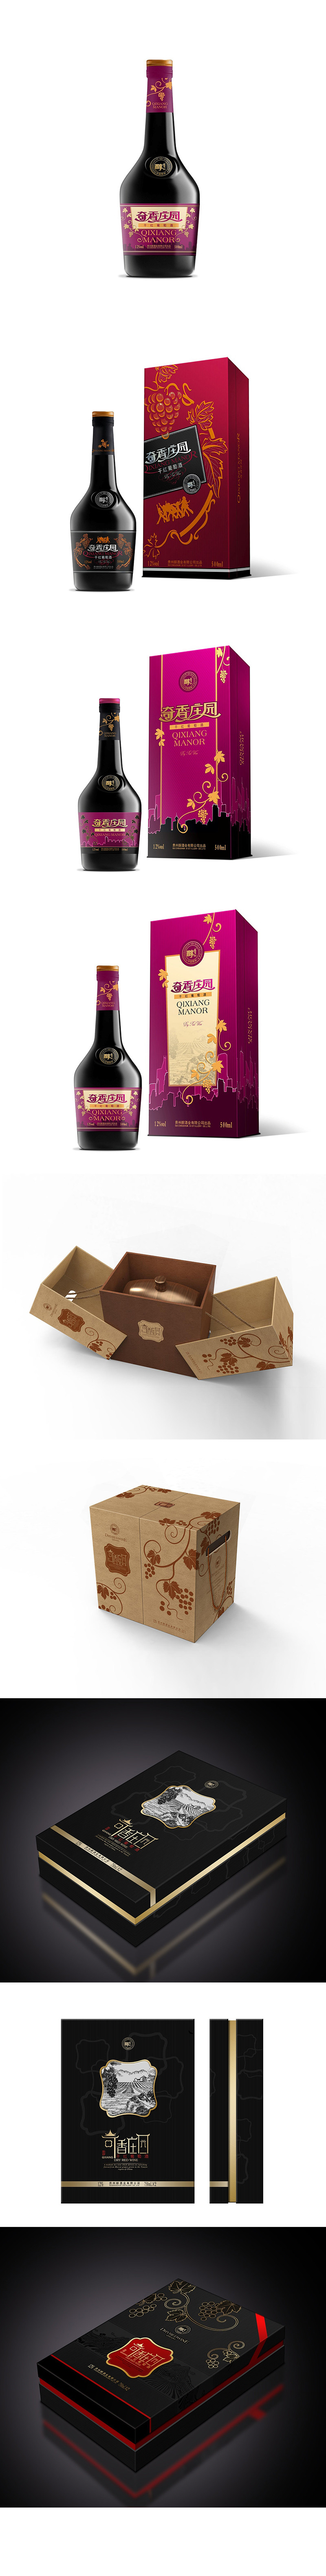 高档黑干红葡萄酒礼盒包装设计与制作